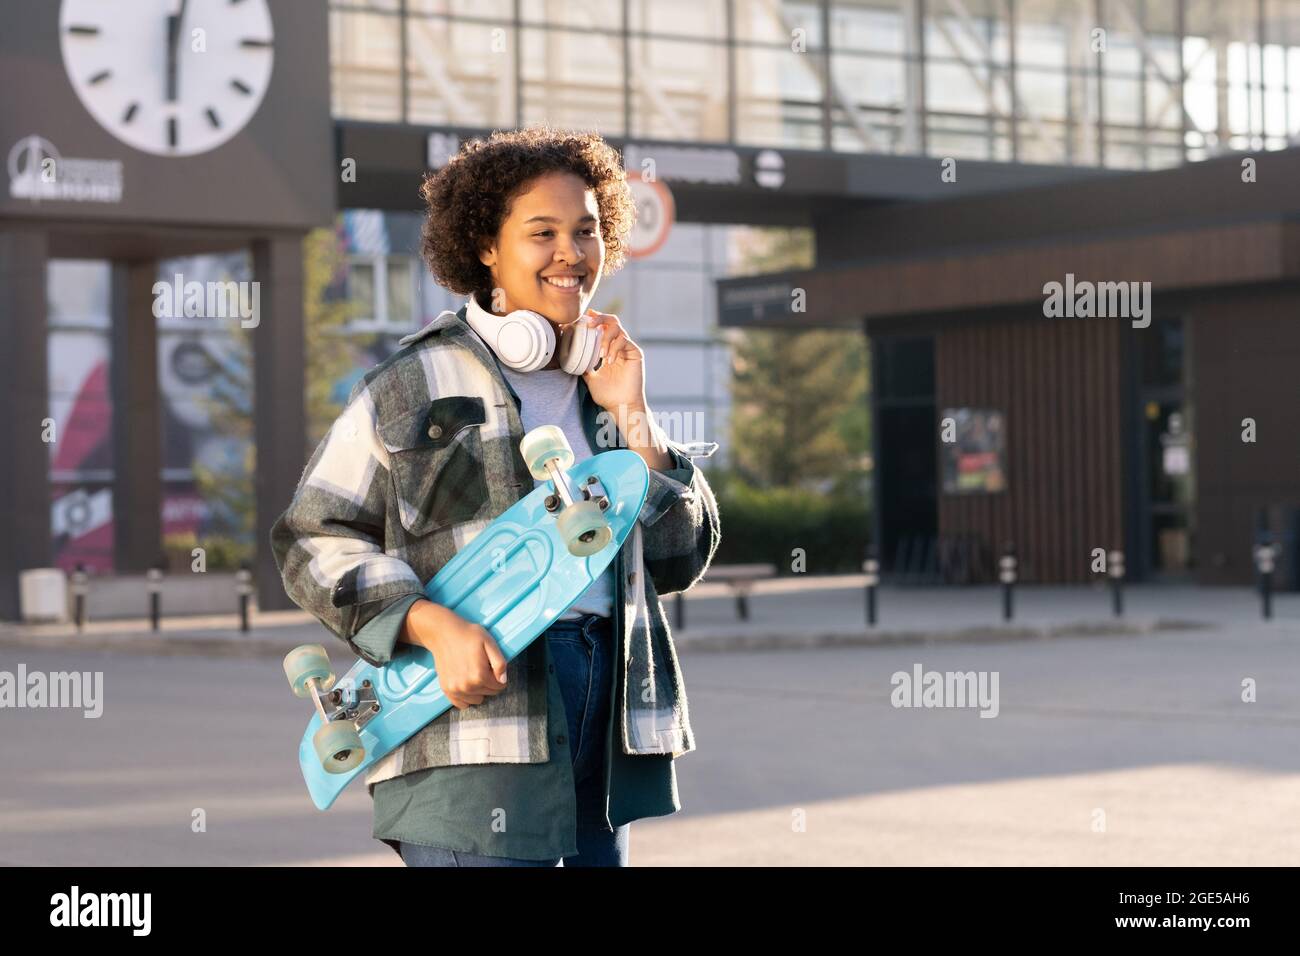 Lächelnde Teenager mit blauem Skateboard, während sie gegen moderne Architektur steht Stockfoto